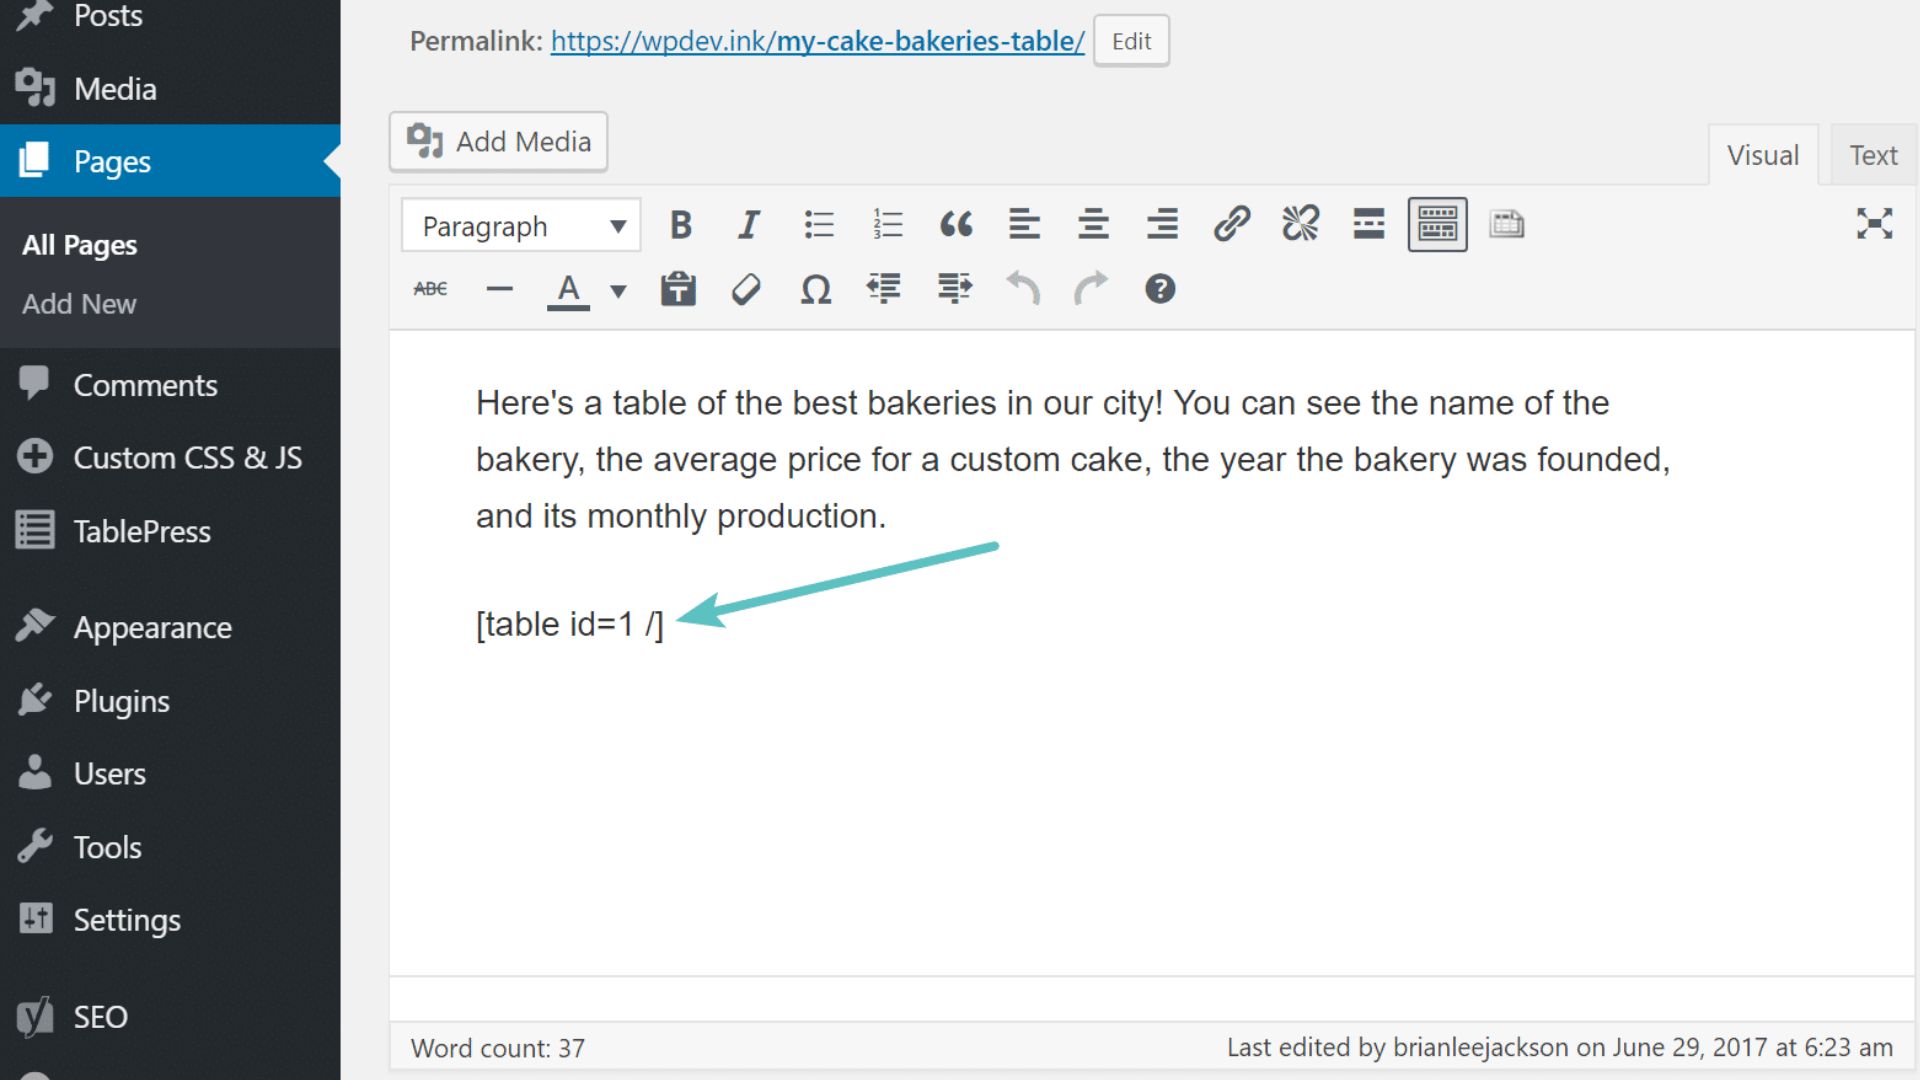 TablePress: WordPress плагин для создания таблиц. Как им пользоваться